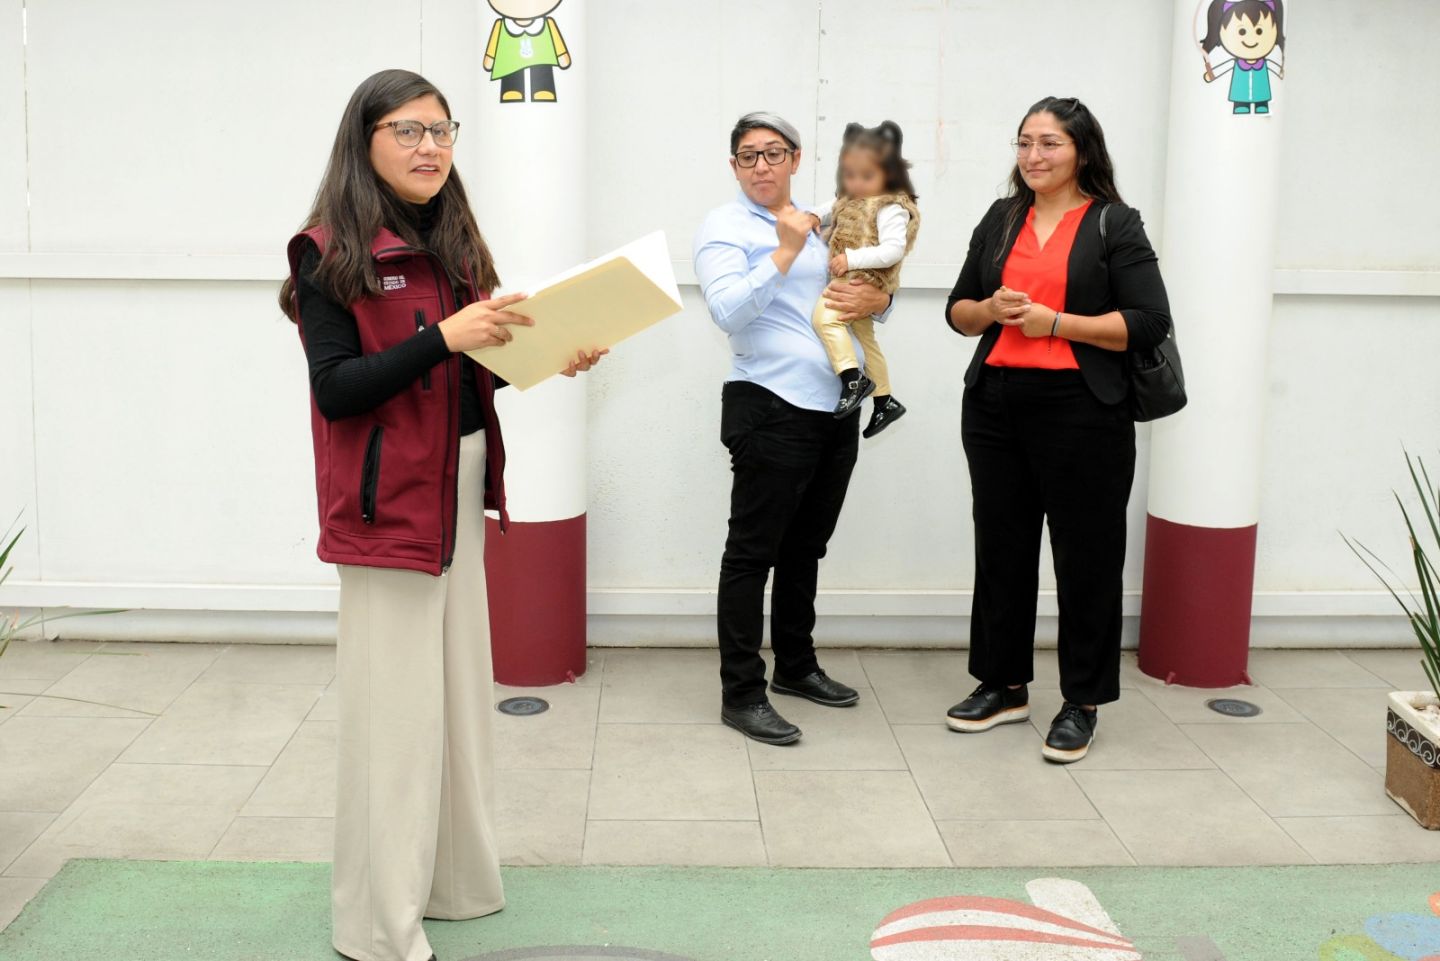 El Estado de México hace historia al consolidar la primera adopción homoparental; Gobierno de Delfina Gómez abona a la inclusión y la no discriminación
